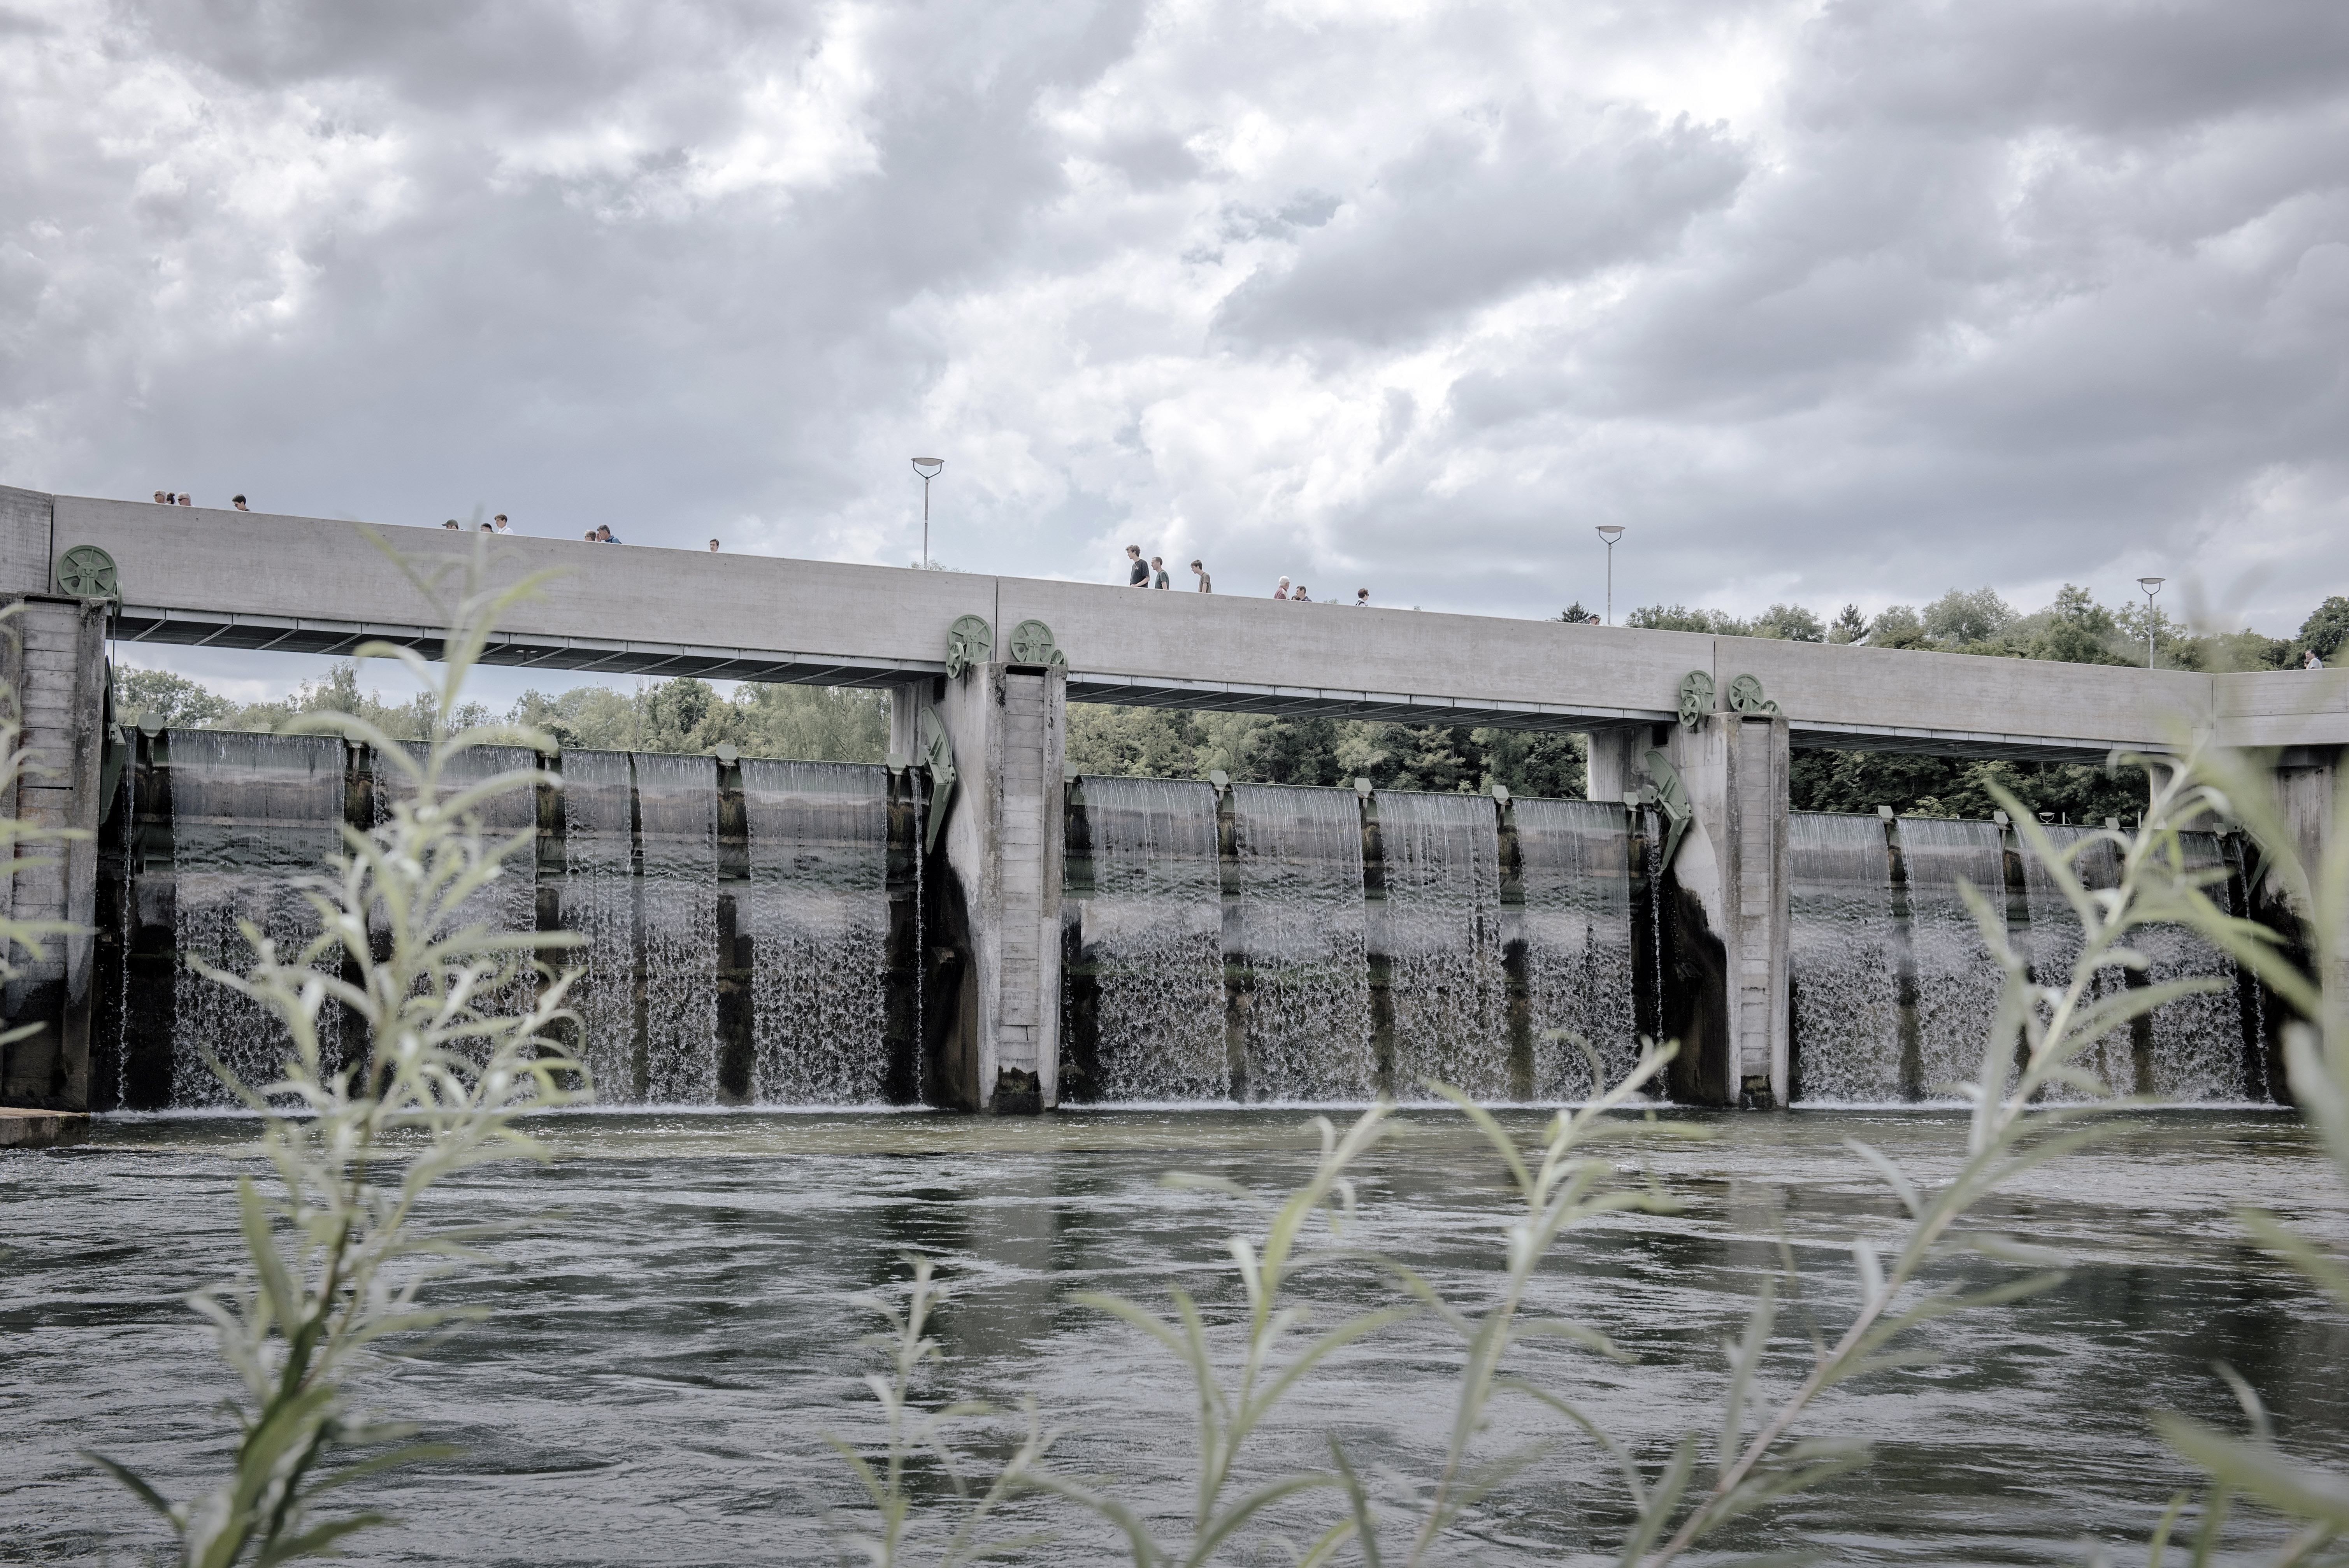 Una presa en Augsburgo, Alemania, que está conectada al sistema de gestión del agua de la ciudad, de 800 años de antigüedad y declarado patrimonio de la humanidad por la UNESCO, el miércoles 27 de agosto de 2022. (Foto Prensa Libre: Laetitia Vancon/The New York Times)